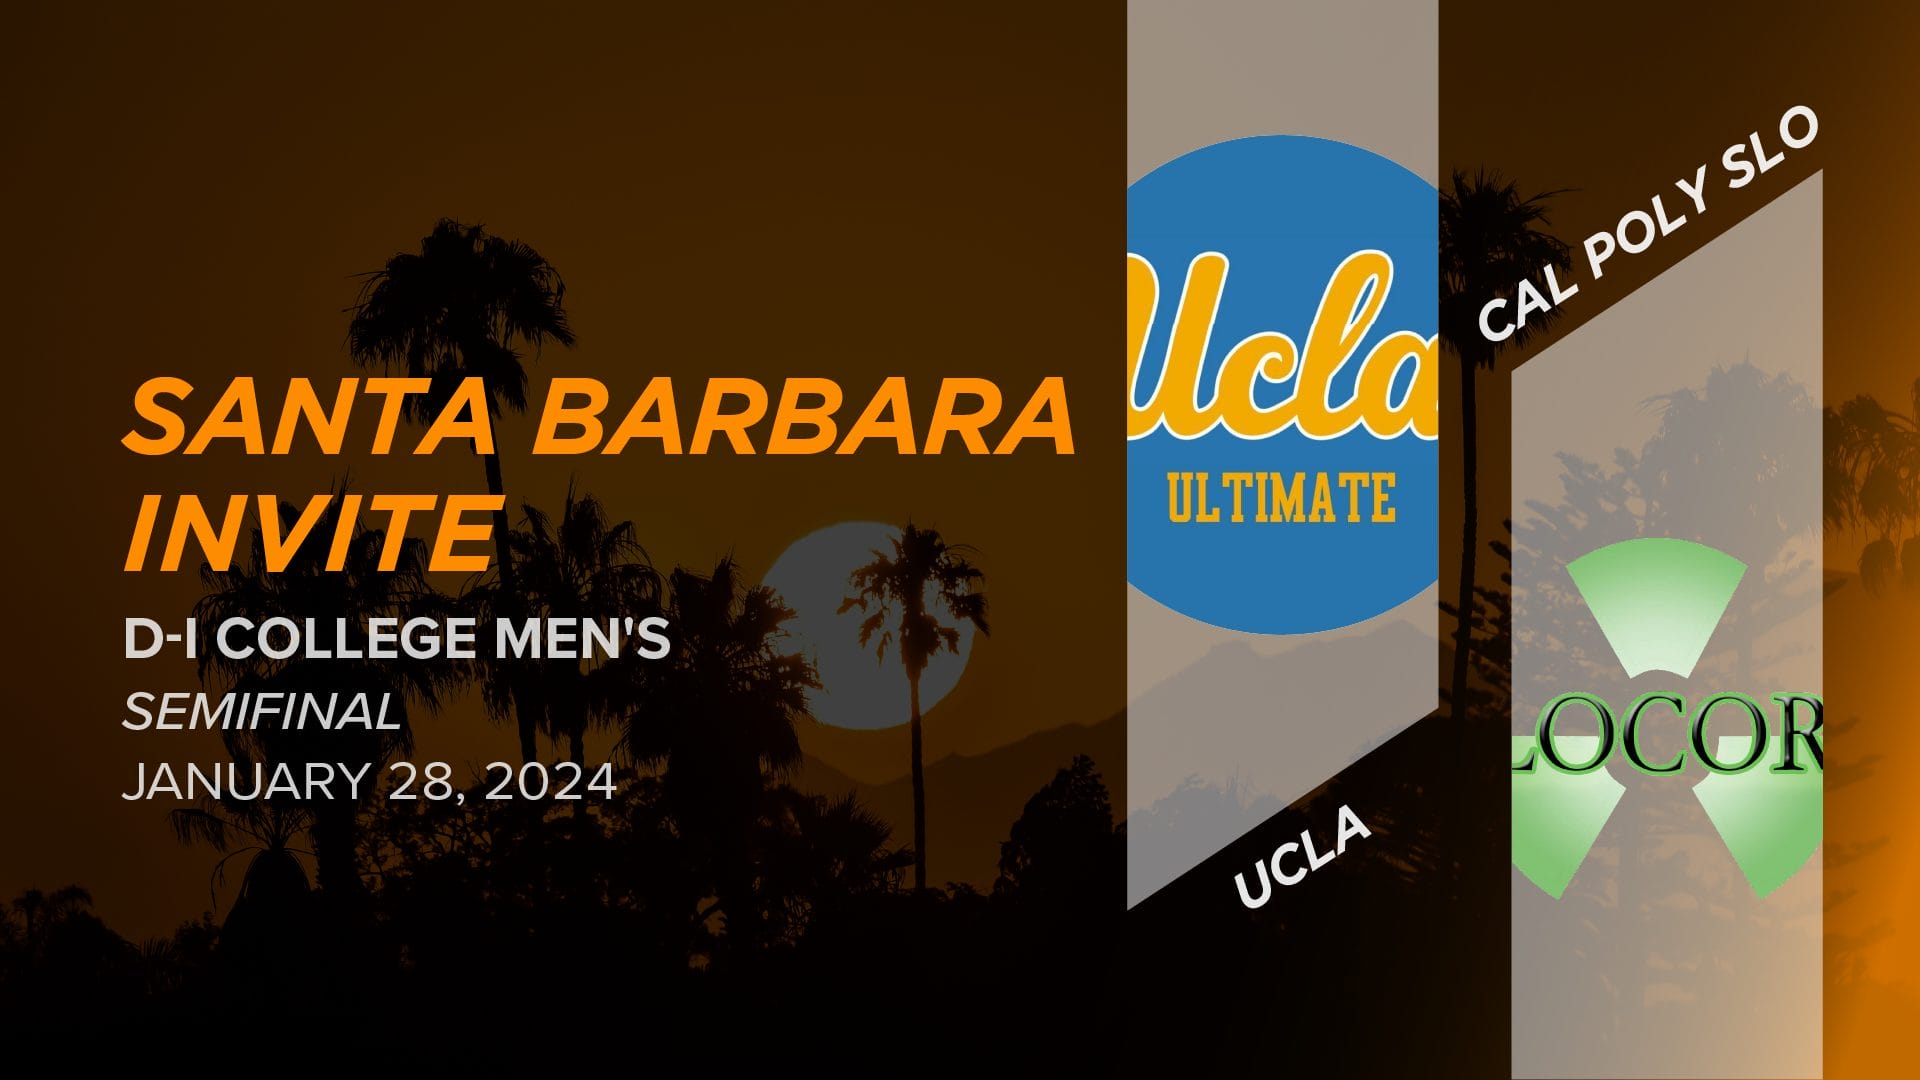 UCLA vs. Cal Poly Slo (Men's Semifinal) 2024 Santa Barbara Invite (D